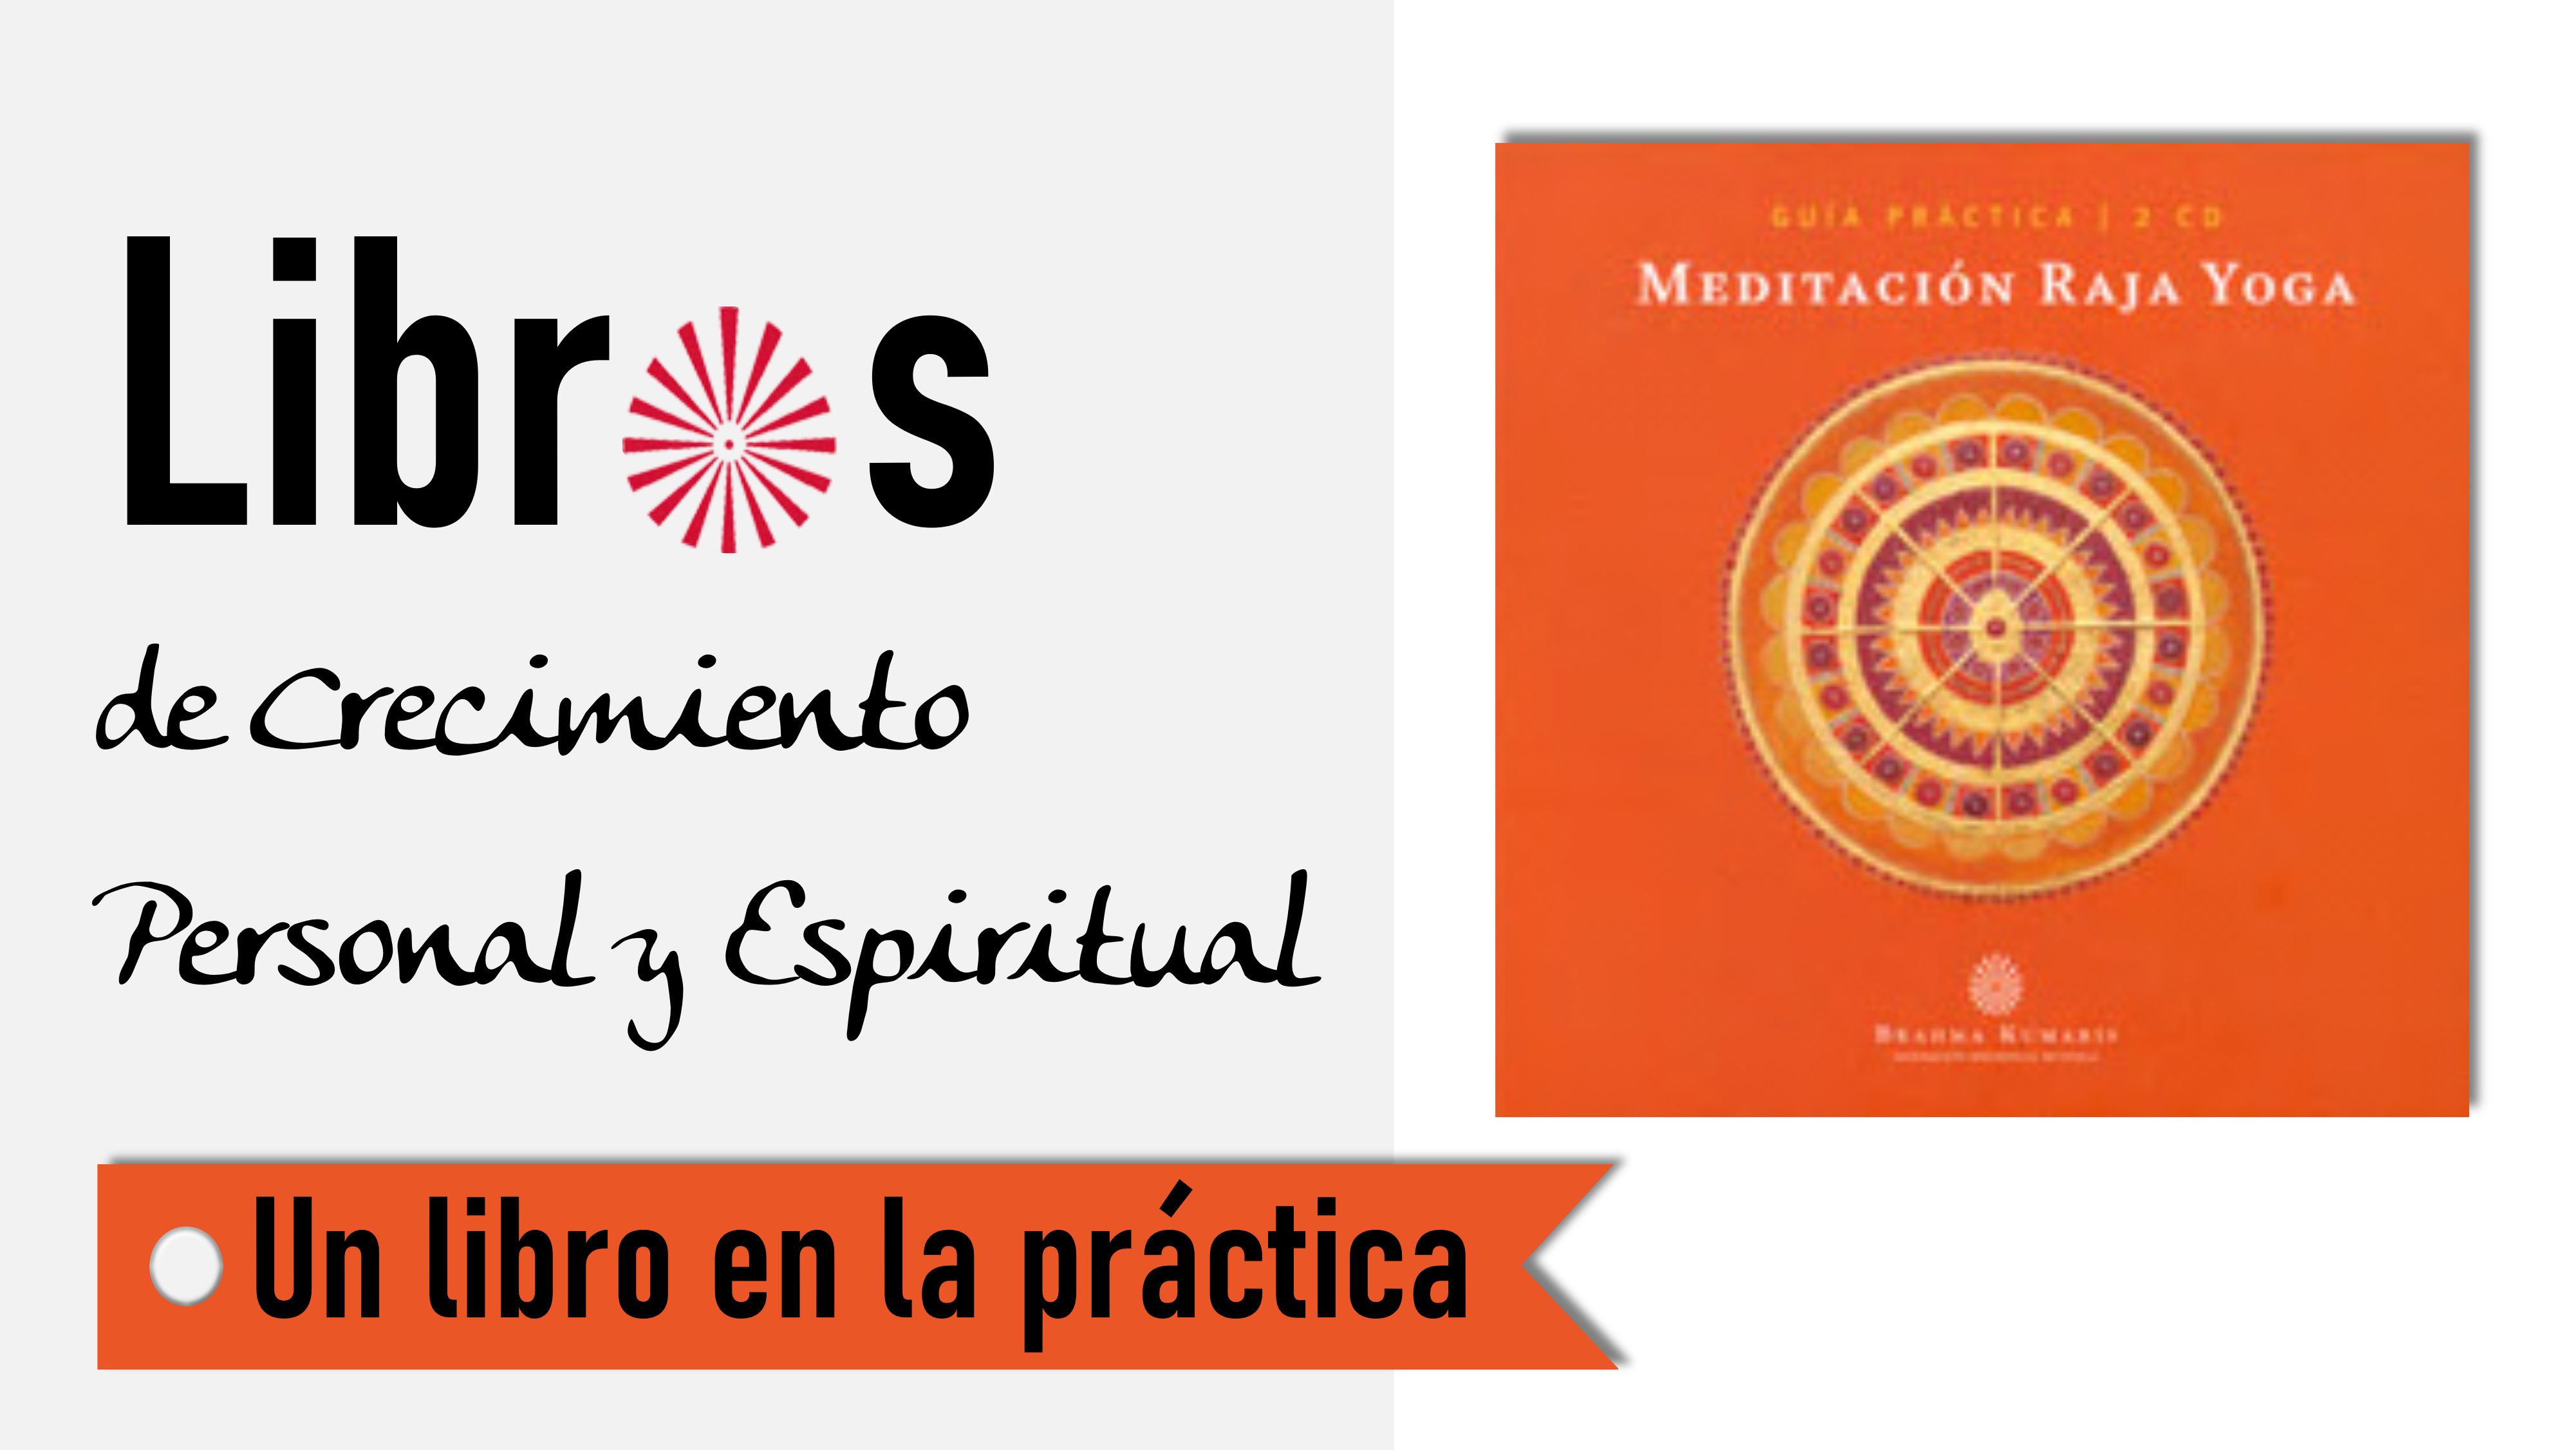 6 Octubre 2020  Un libro en la práctica: Guía práctica de Meditación Raja Yoga